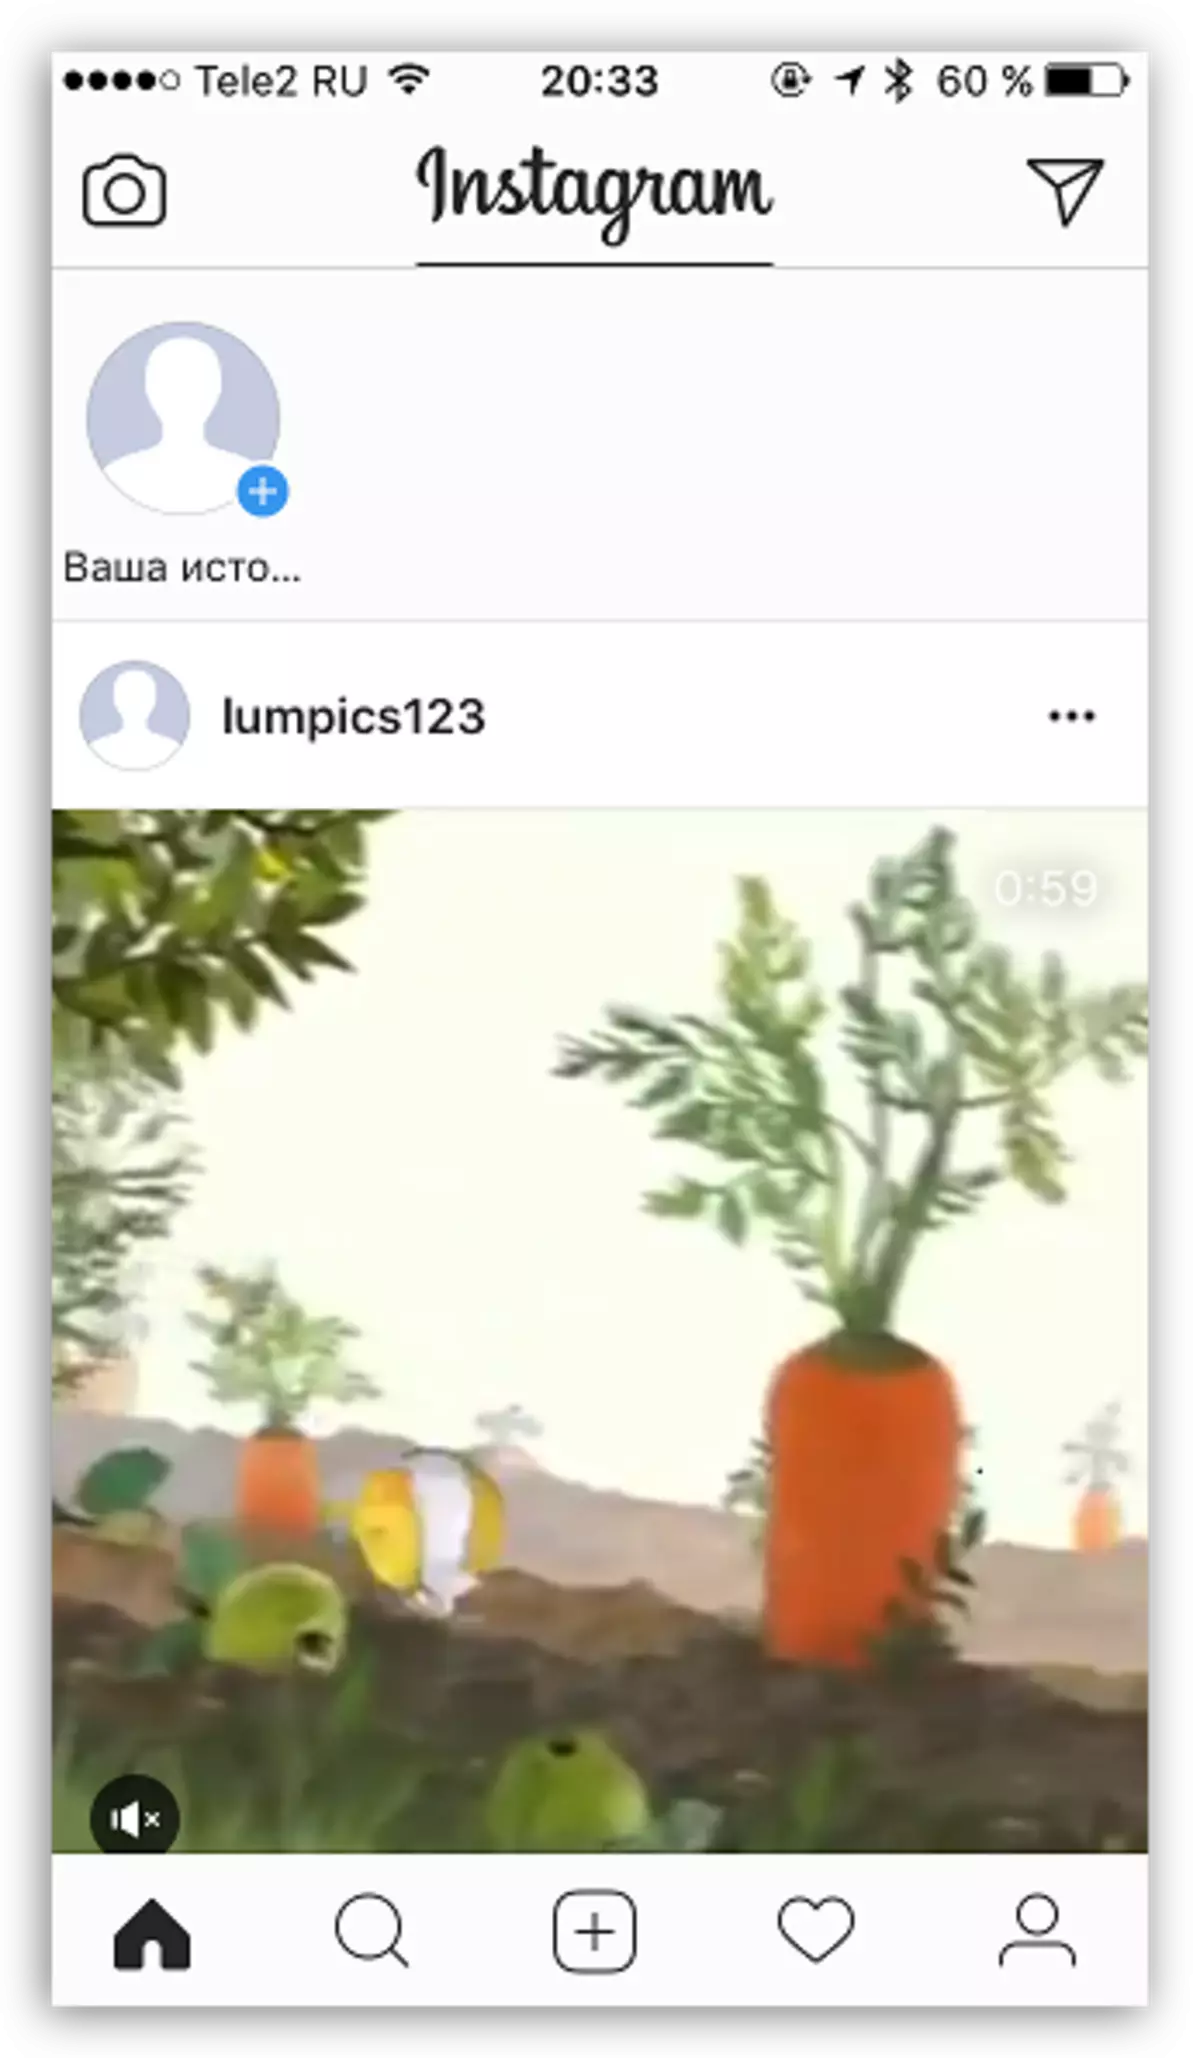 કમ્પ્યુટરથી Instagram માં વિડિઓ પ્રકાશિત